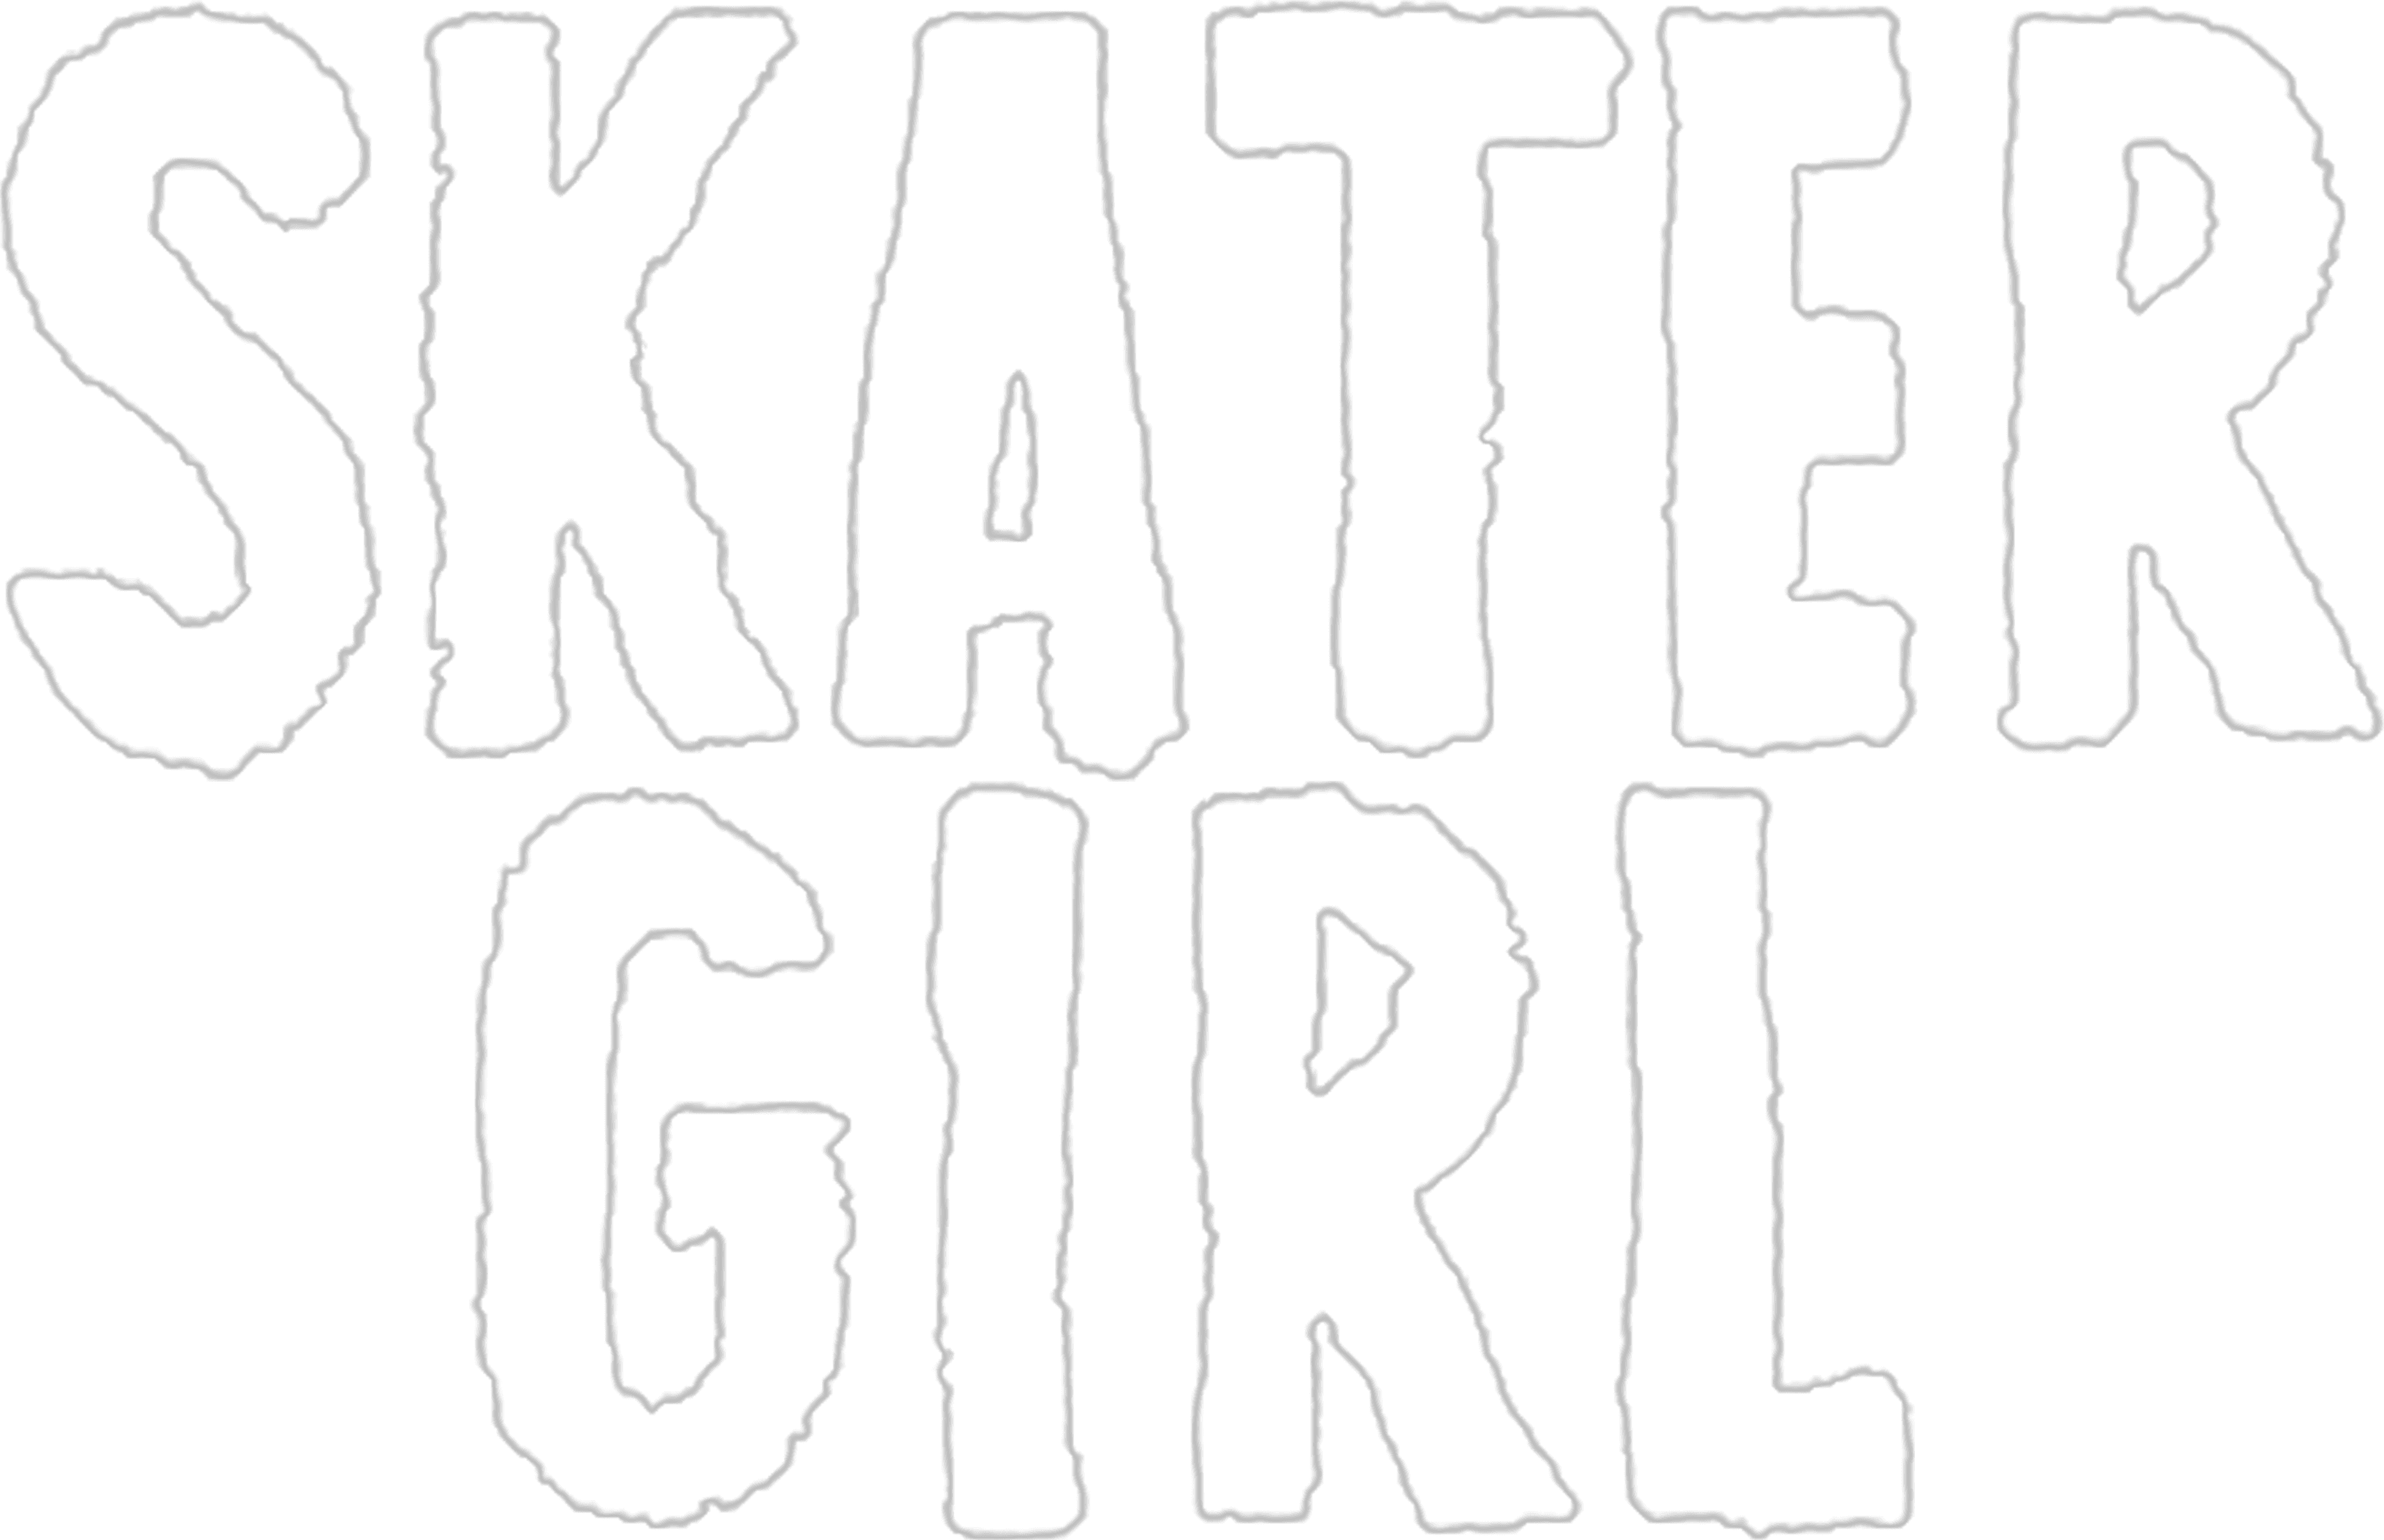 Skater Girl logo